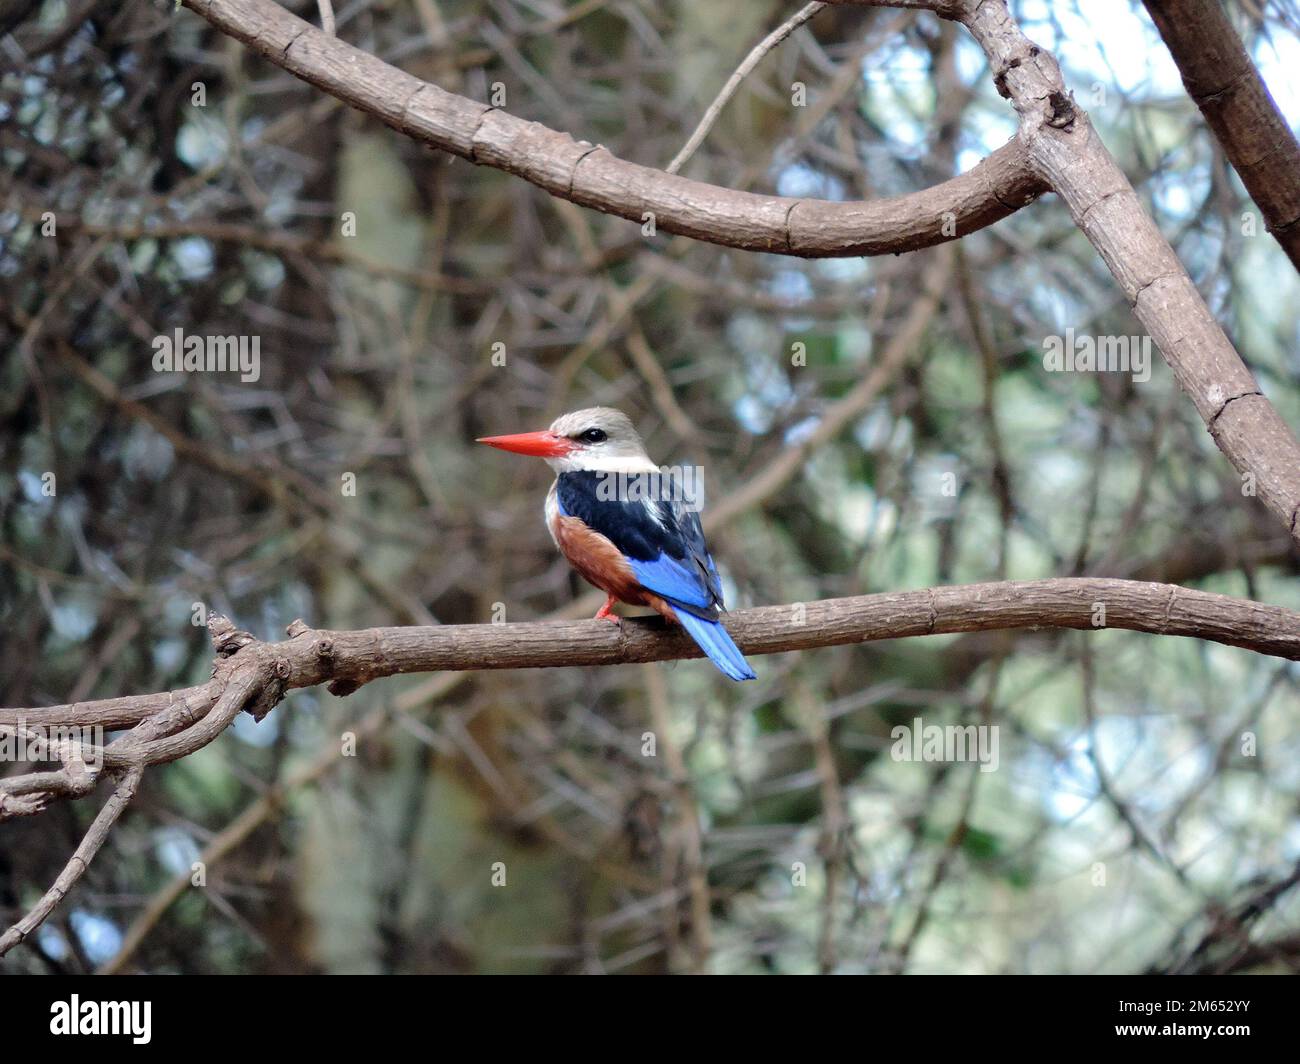 Kingfisher dans un arbre de la savane Tanzanie Afrique de l'est Banque D'Images